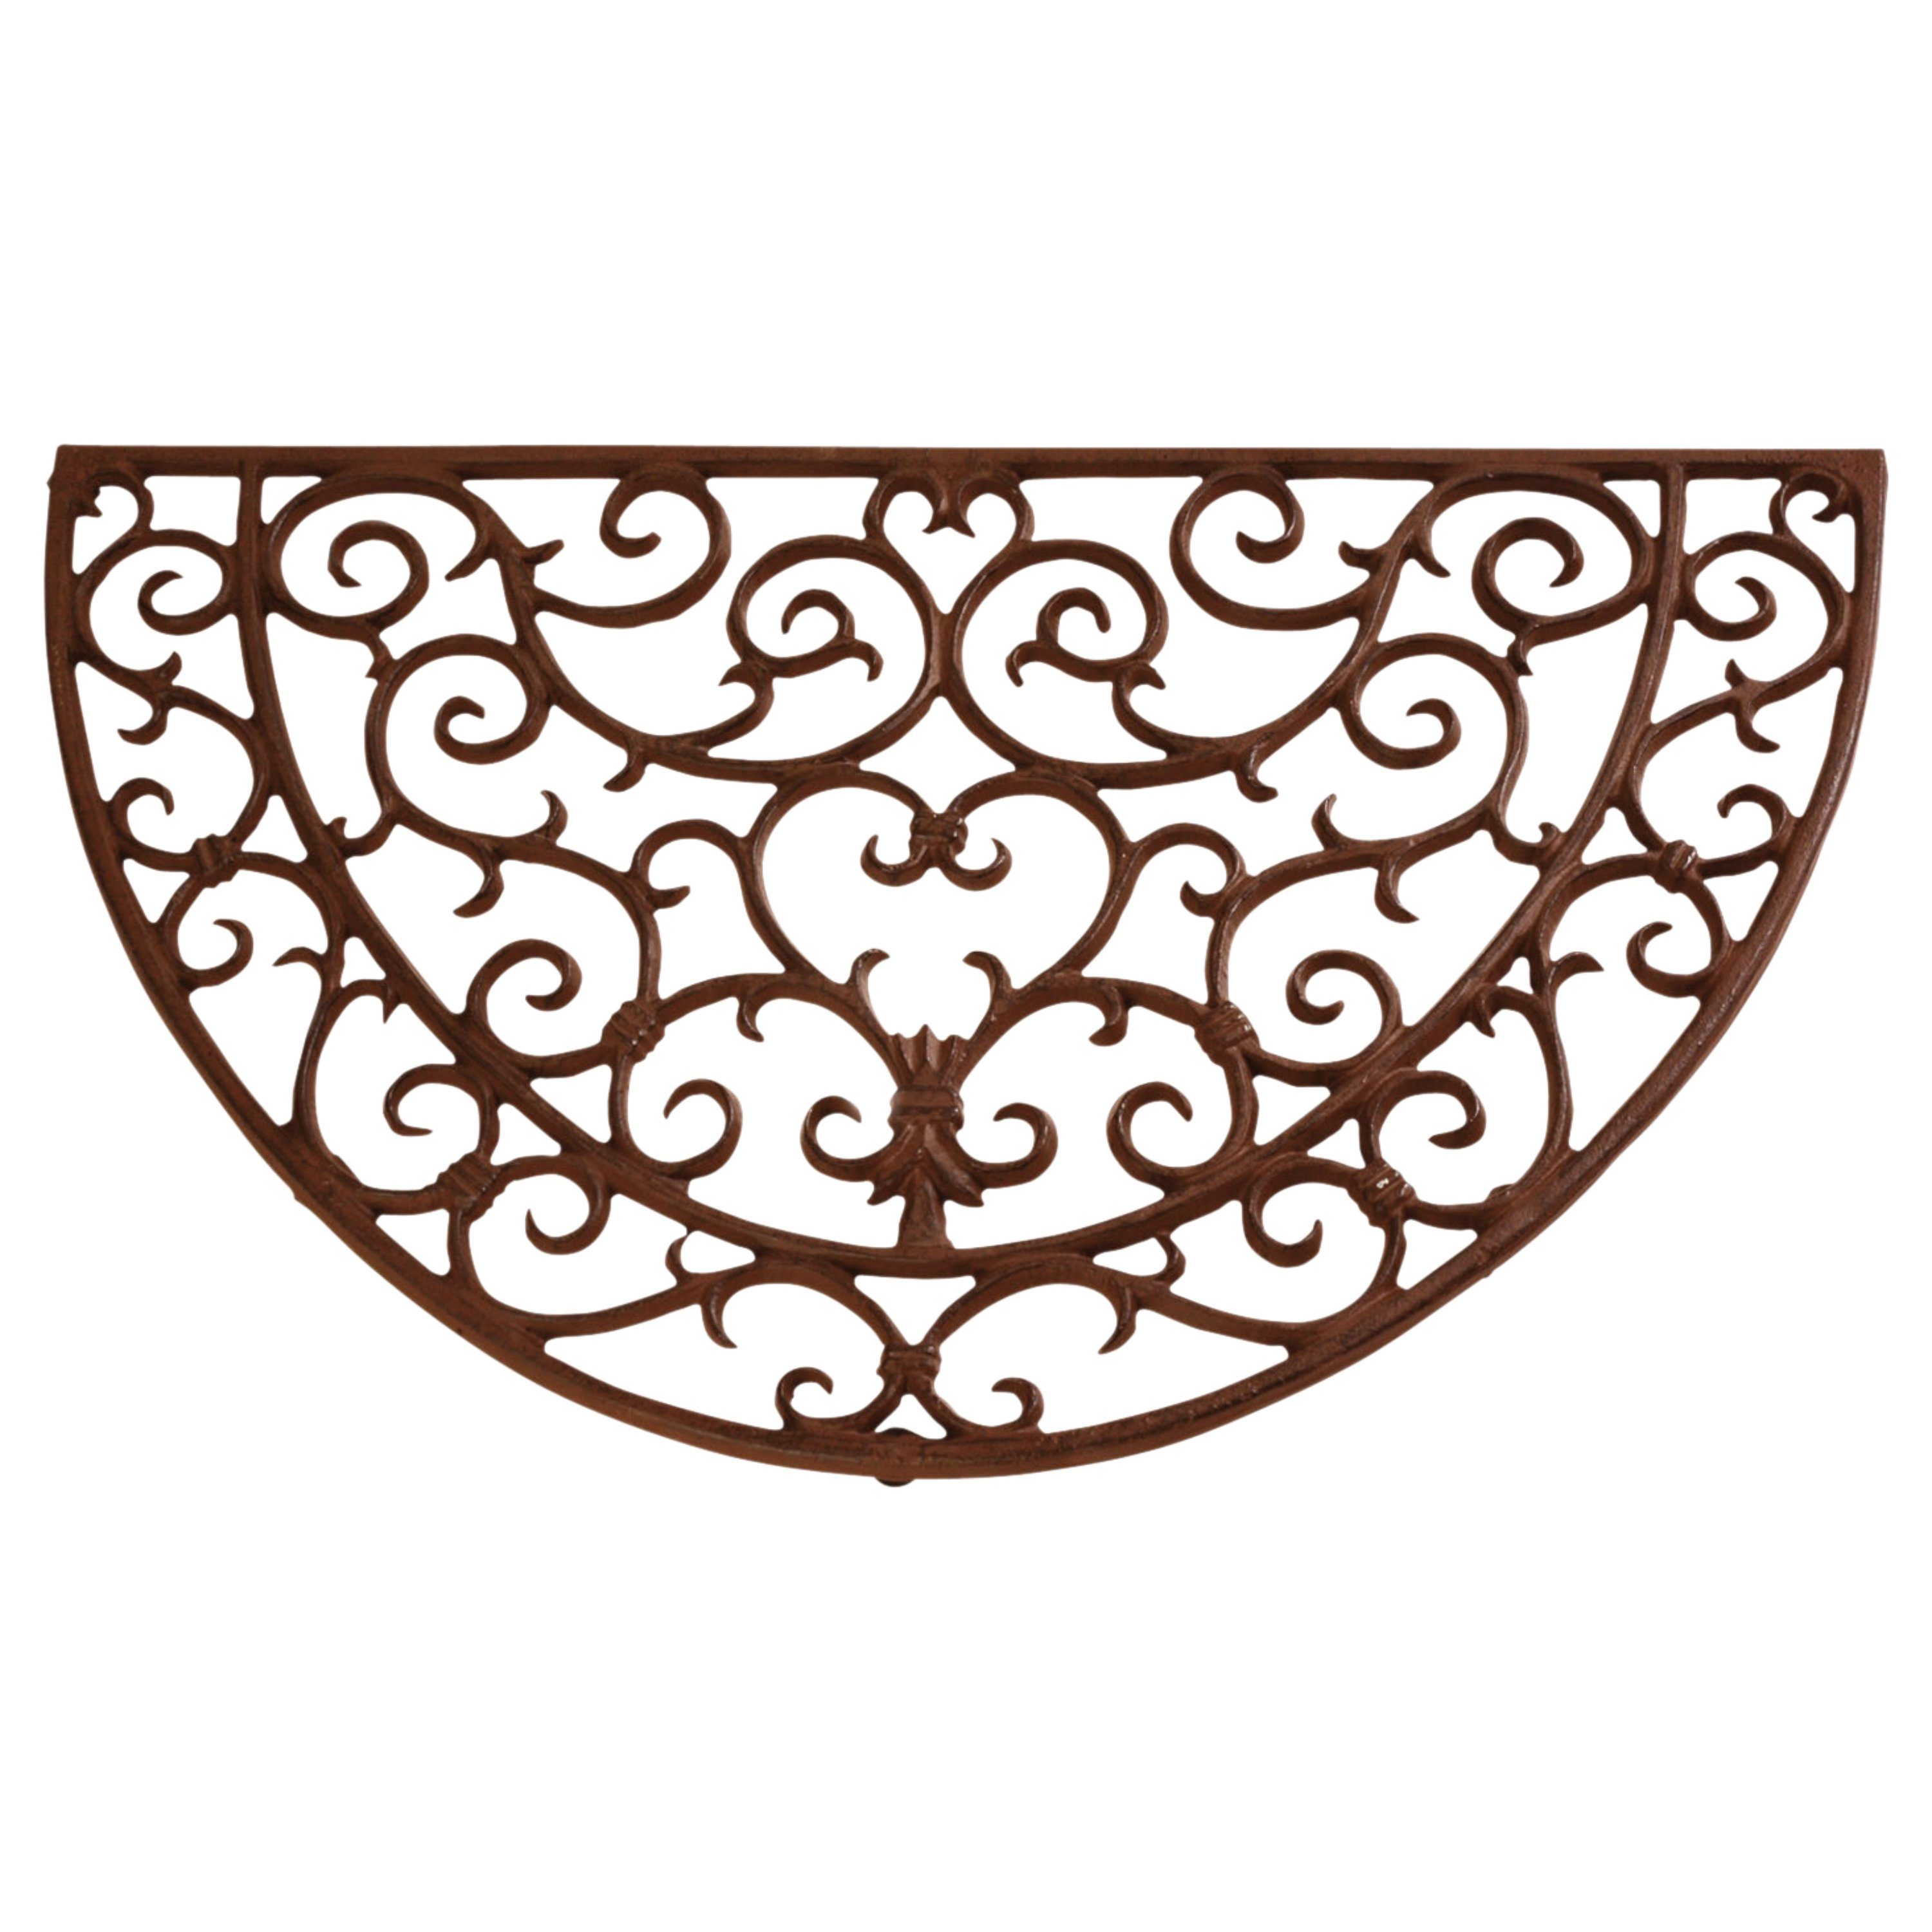 Fußmatte Hochwertige halbrunde Türmatte aus Gusseisen - Robust und dekorativ, esschert design